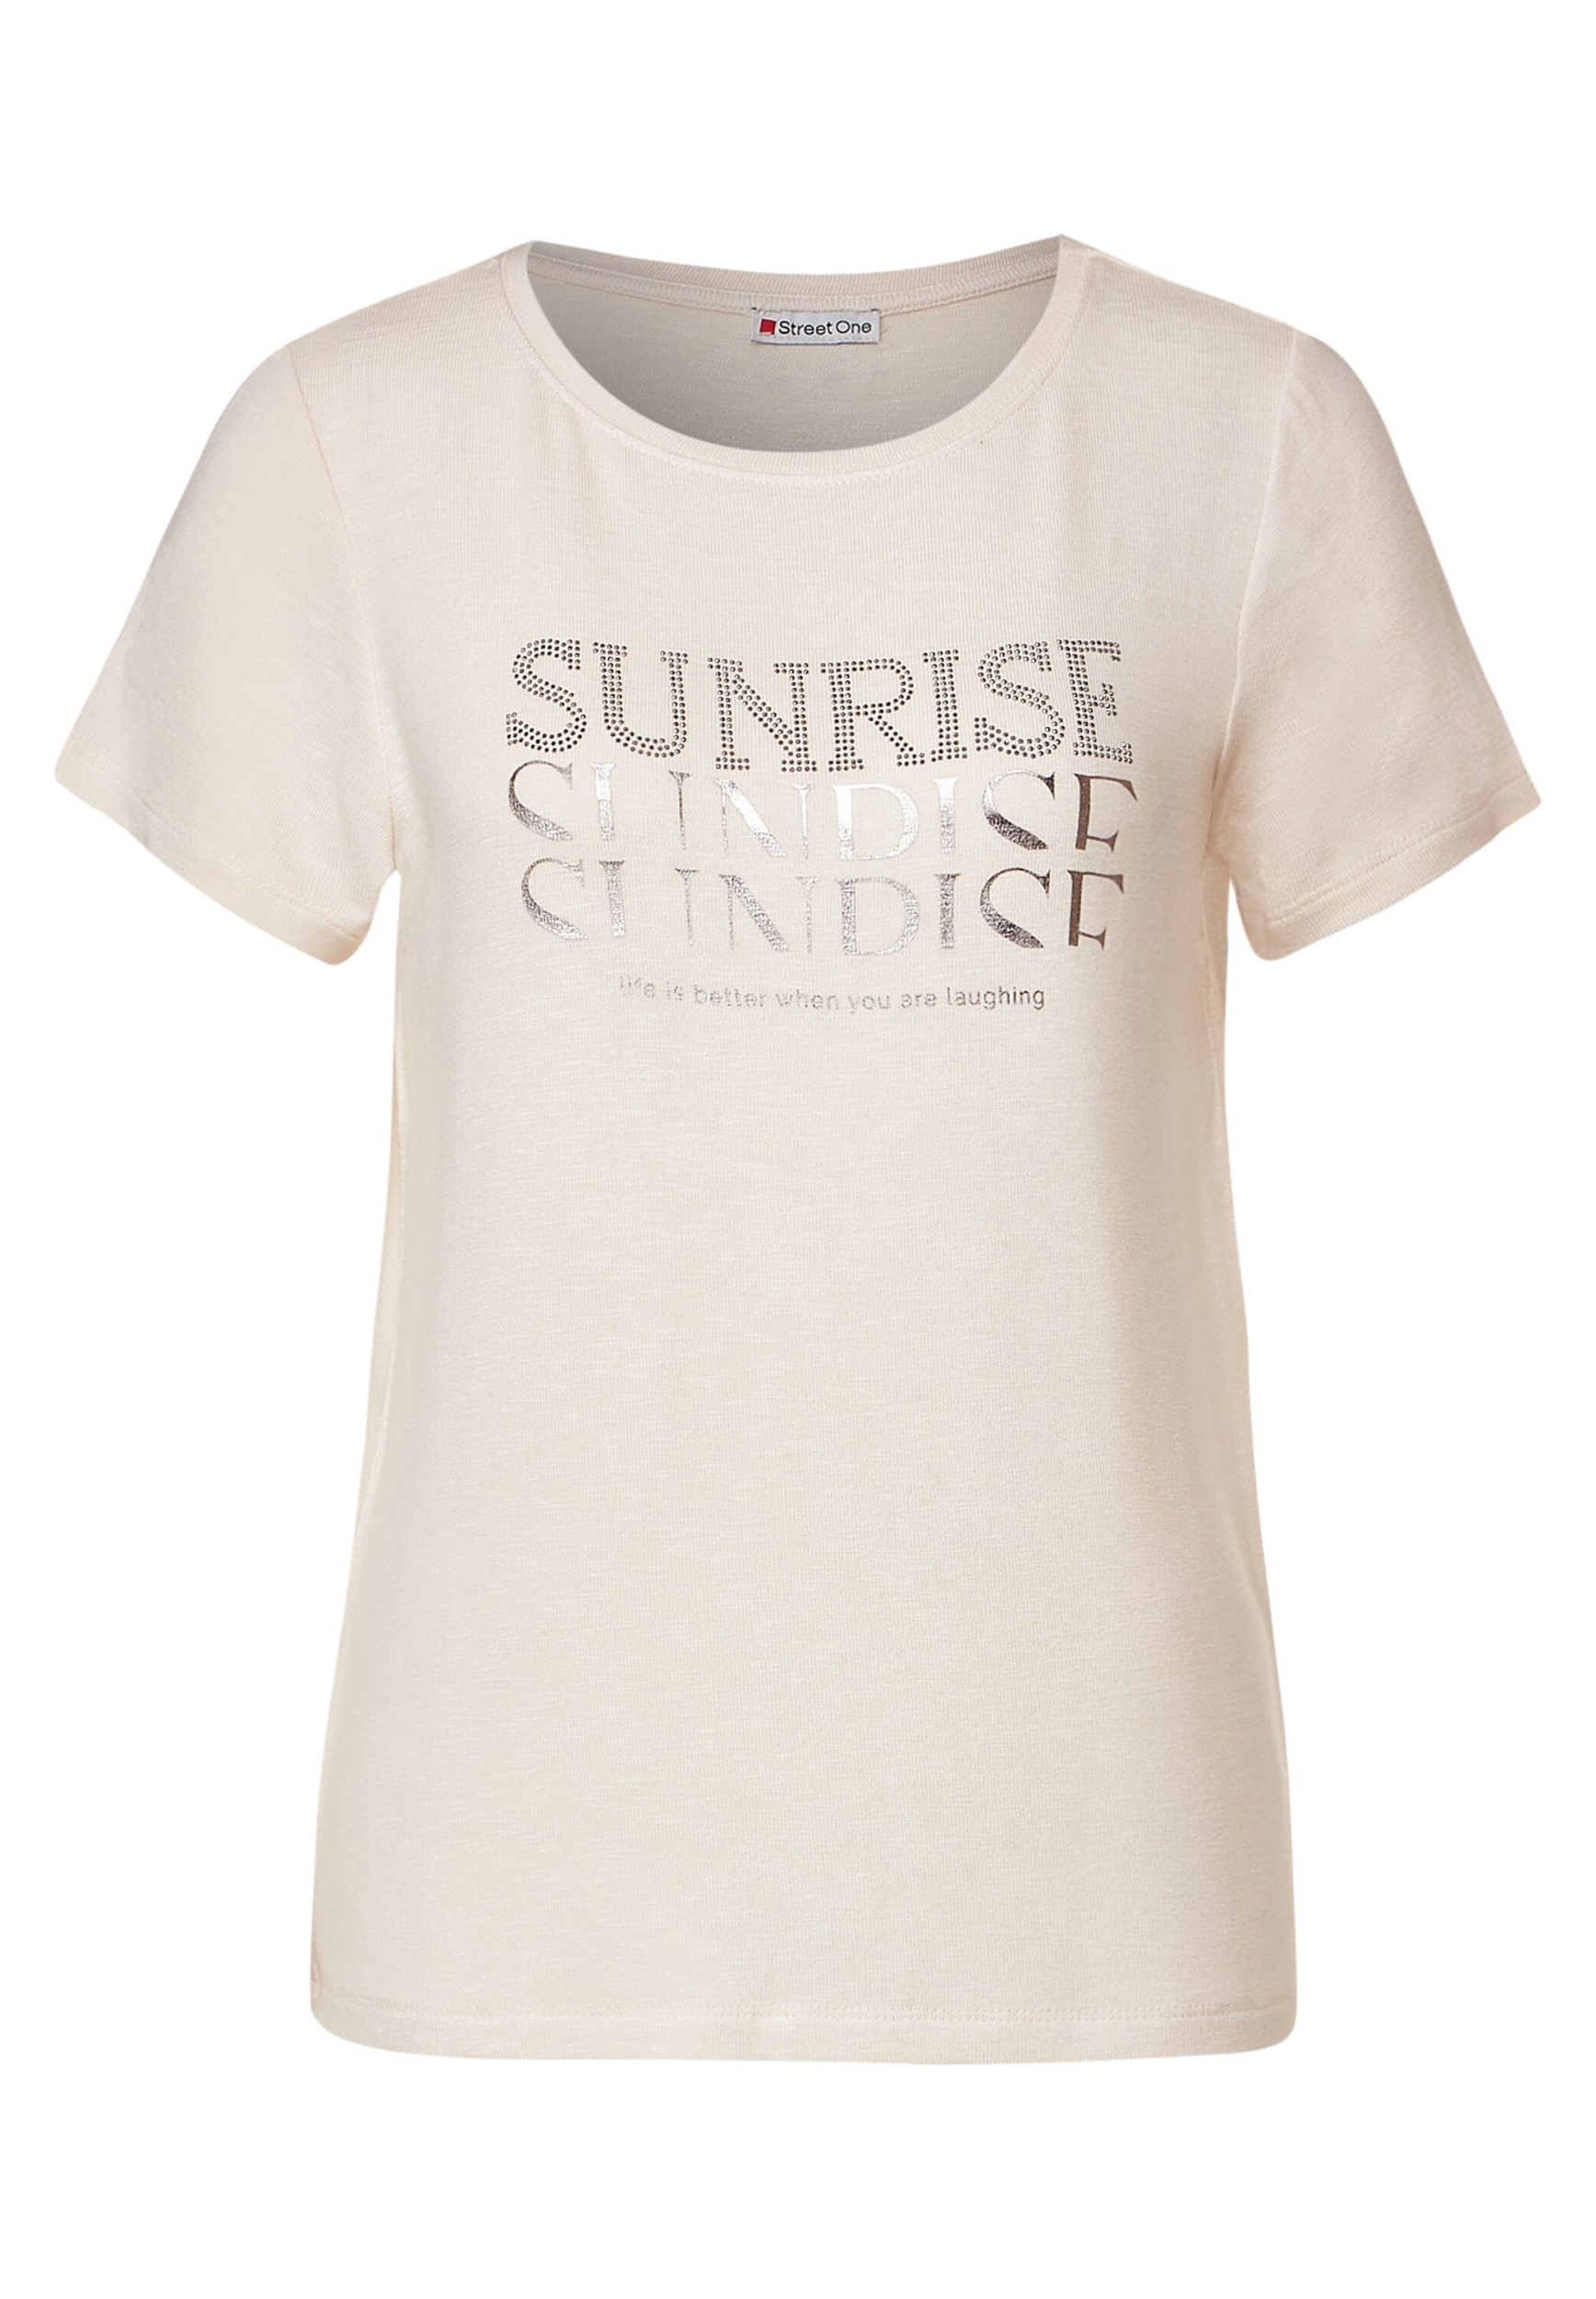 LTD QR stone wording shirt | 40 | cream white | A320371-24943-40